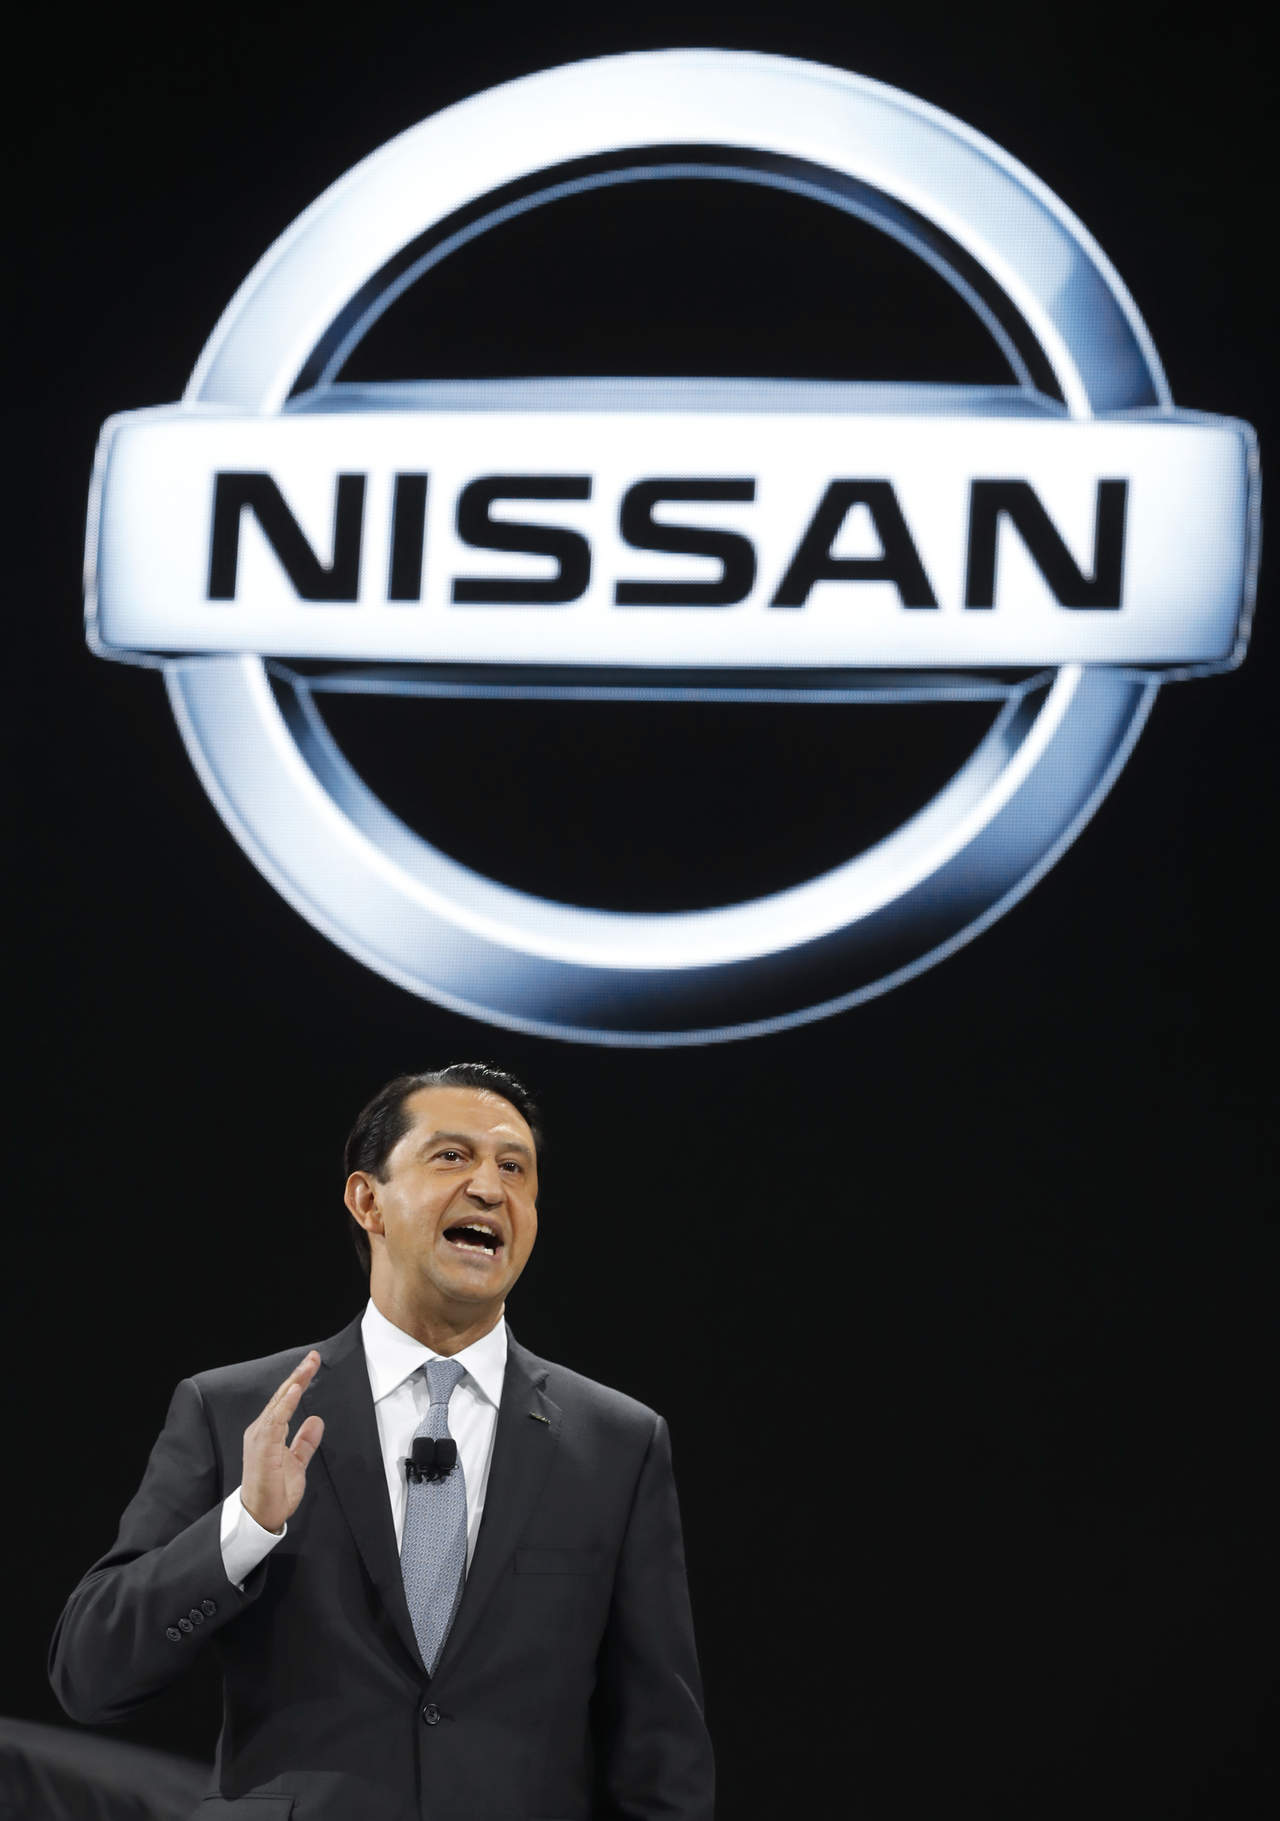 México sera atractivo para invertir: Nissan